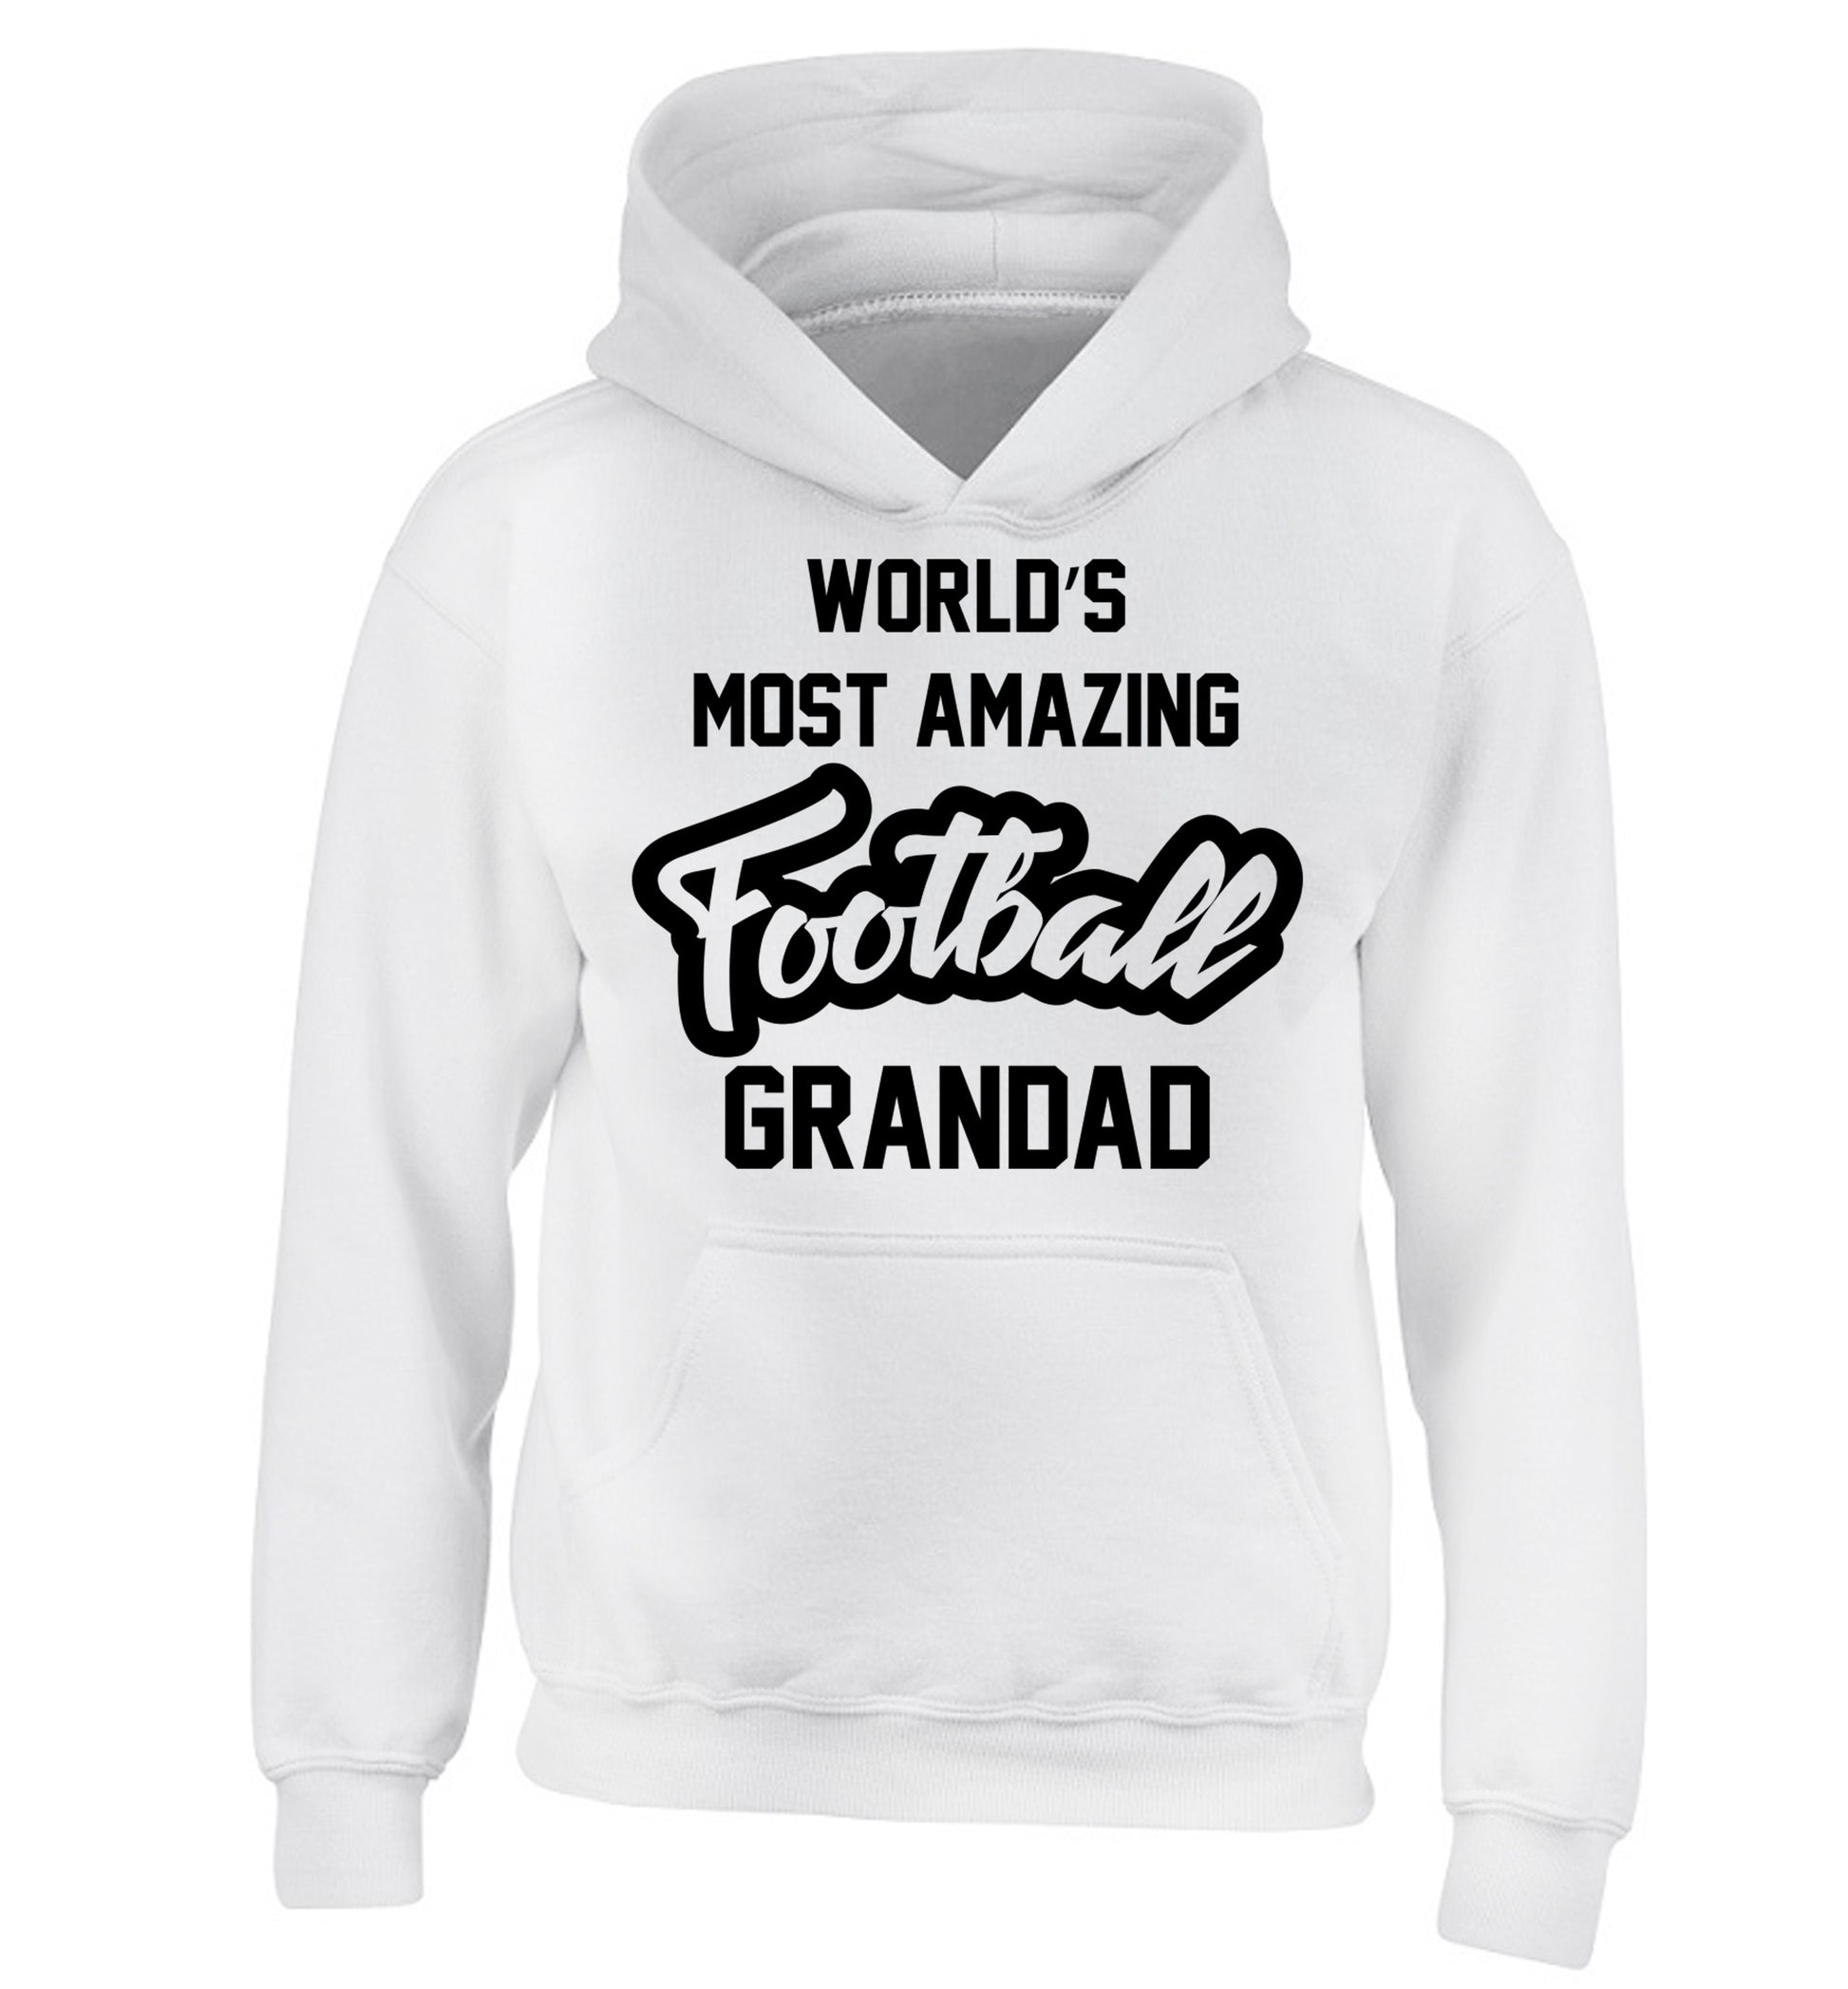 Worlds most amazing football grandad children's white hoodie 12-14 Years